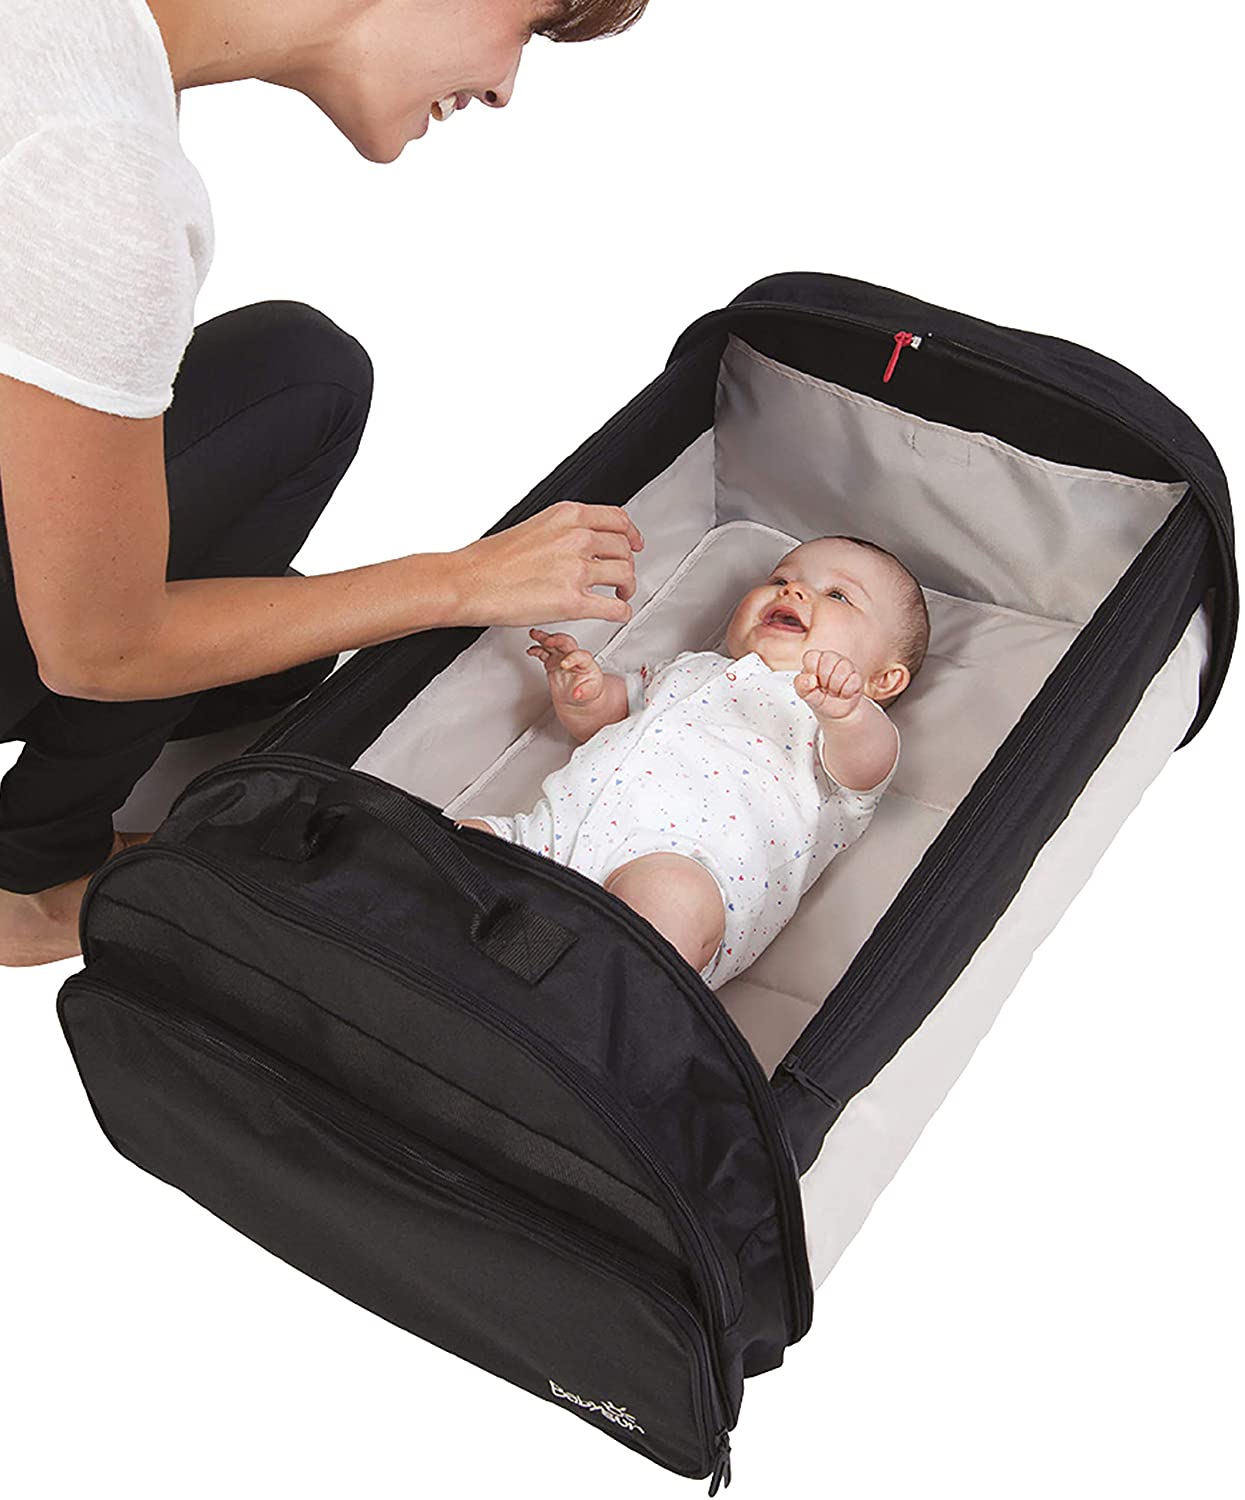 Lit de voyage bébé : choisir son lit bébé de voyage